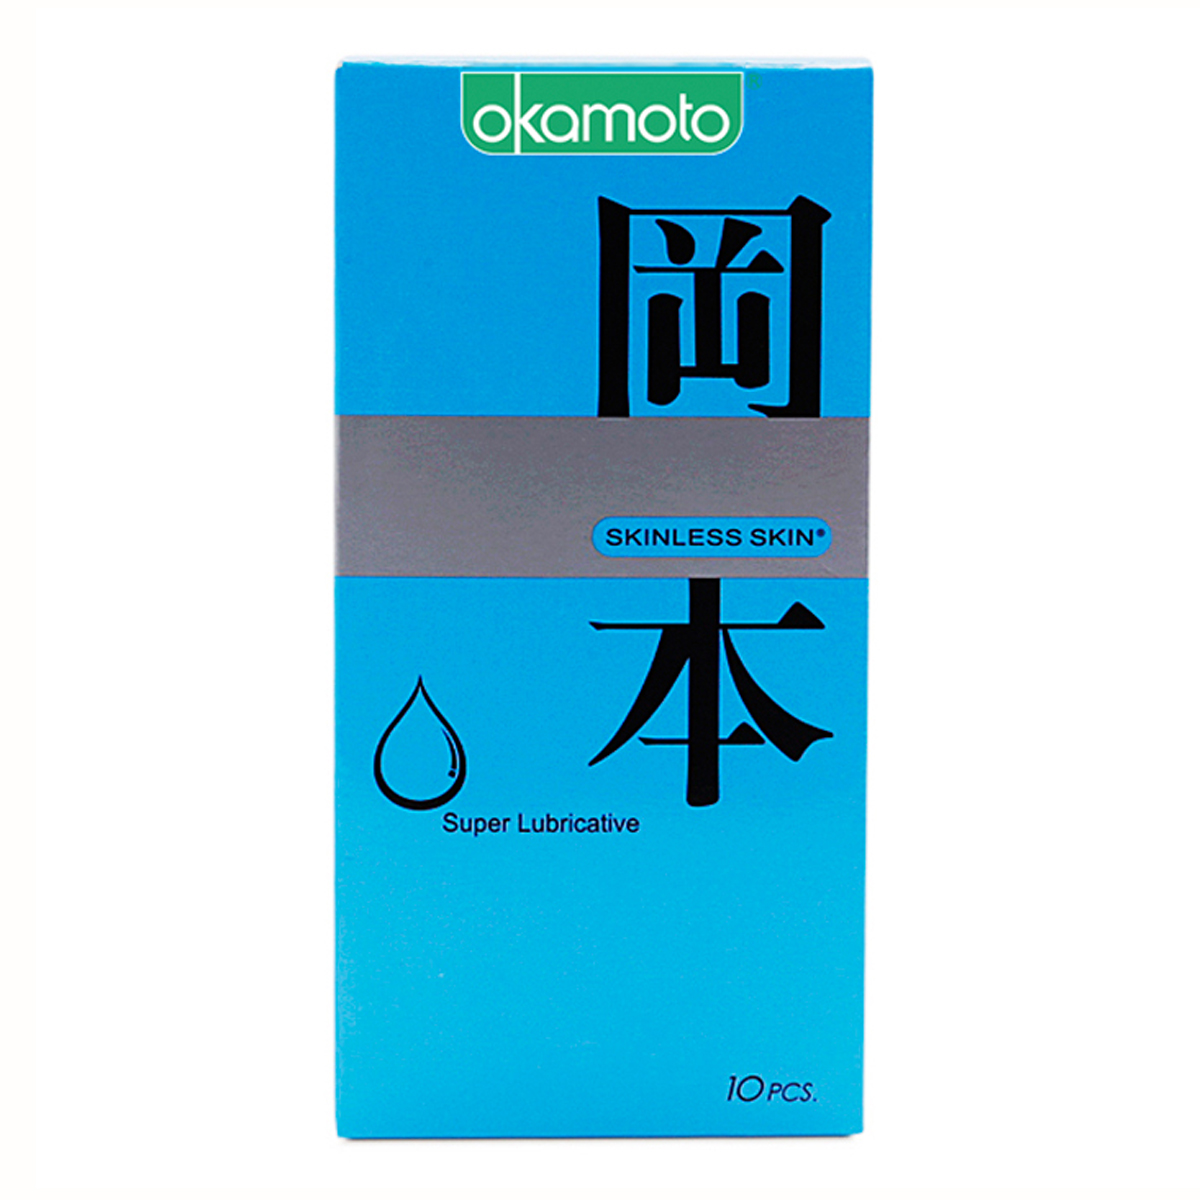 Bao cao su thêm chất bôi trơn,Sáng bóng mềm mại Okamoto Skinless Skin Supper Lub-10's được sản xuất hoàn toàn bằng cao su thiên nhiên cao cấp cũng như đáp ứng các yêu cầu và điều kiện sản xuất nghiêm ngặt, đảm bảo an toàn tối đa cho người sử dụng.